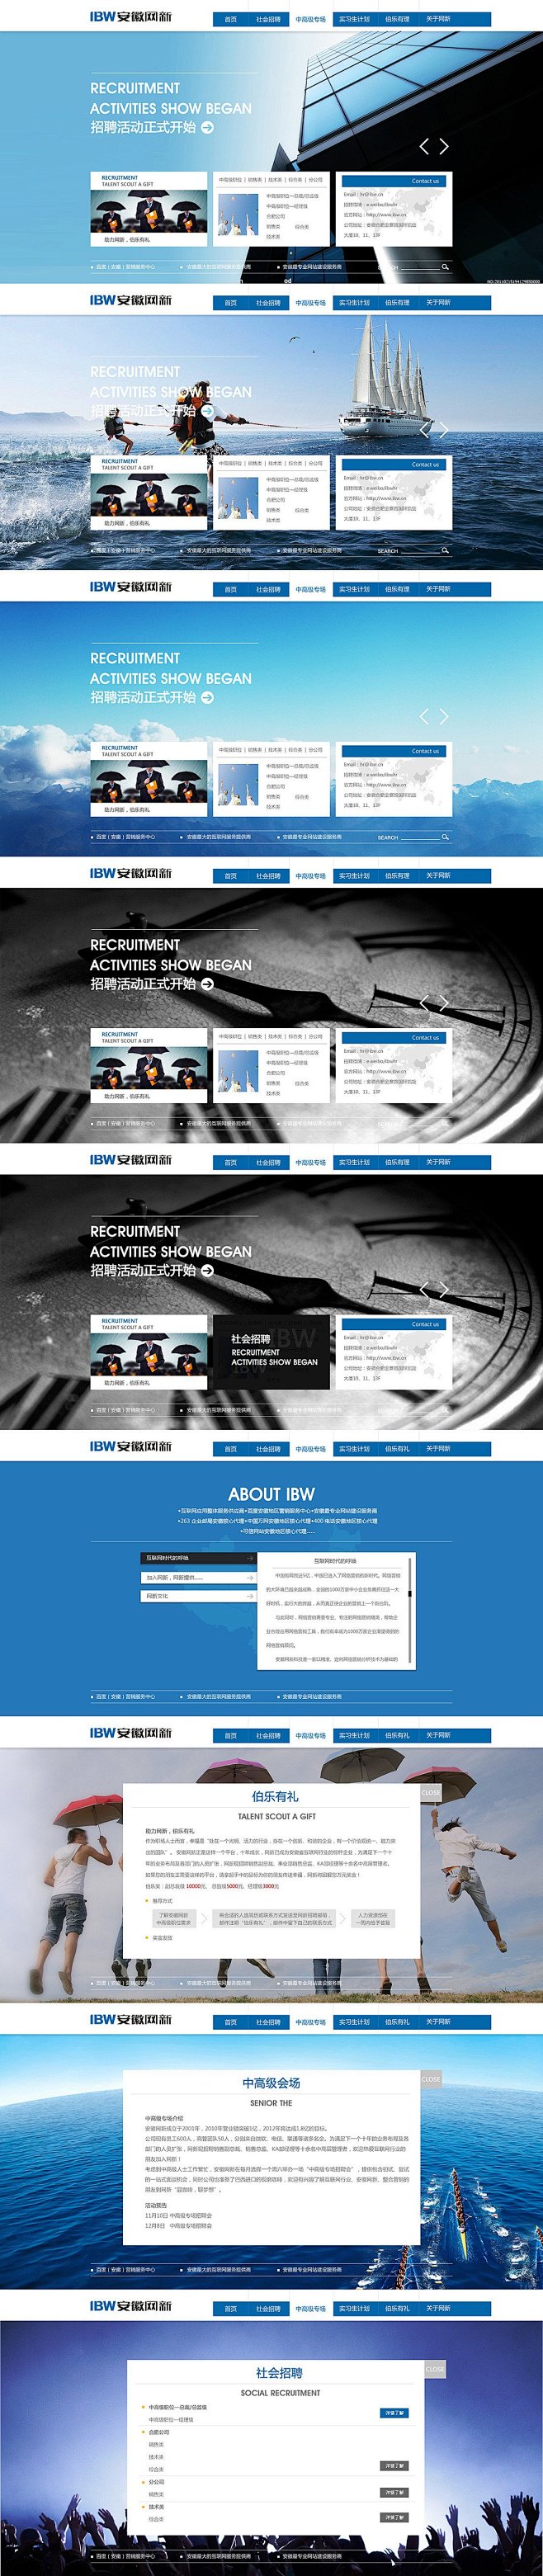 简约蓝色企业网站 | 盒子UI